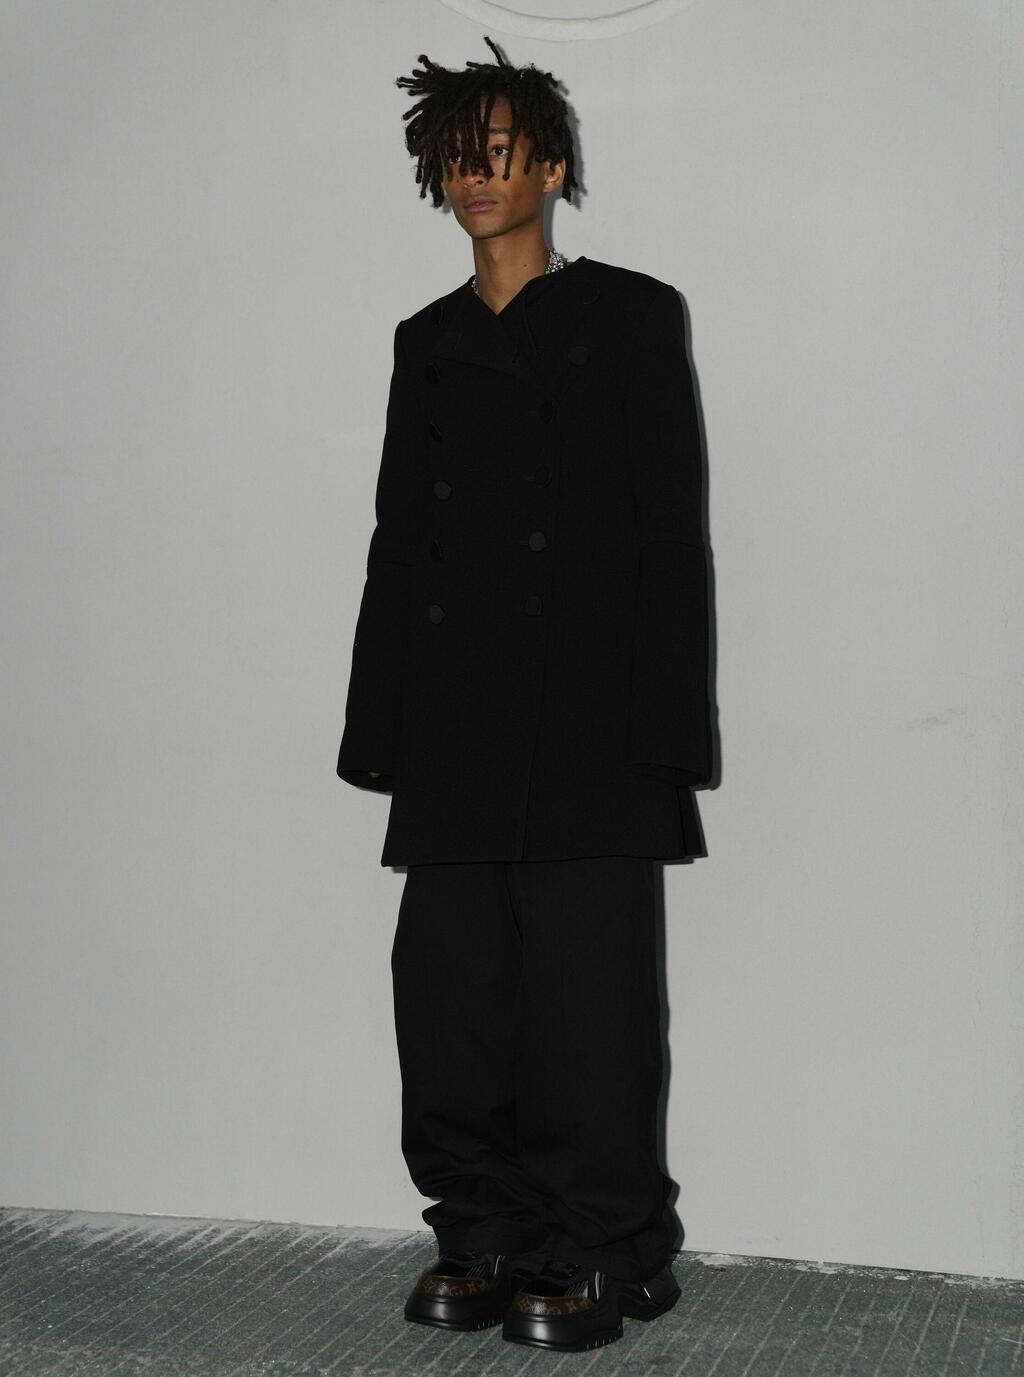 ג'יידן סמית' בתצוגת אופנה של לואי ויטון, 2023